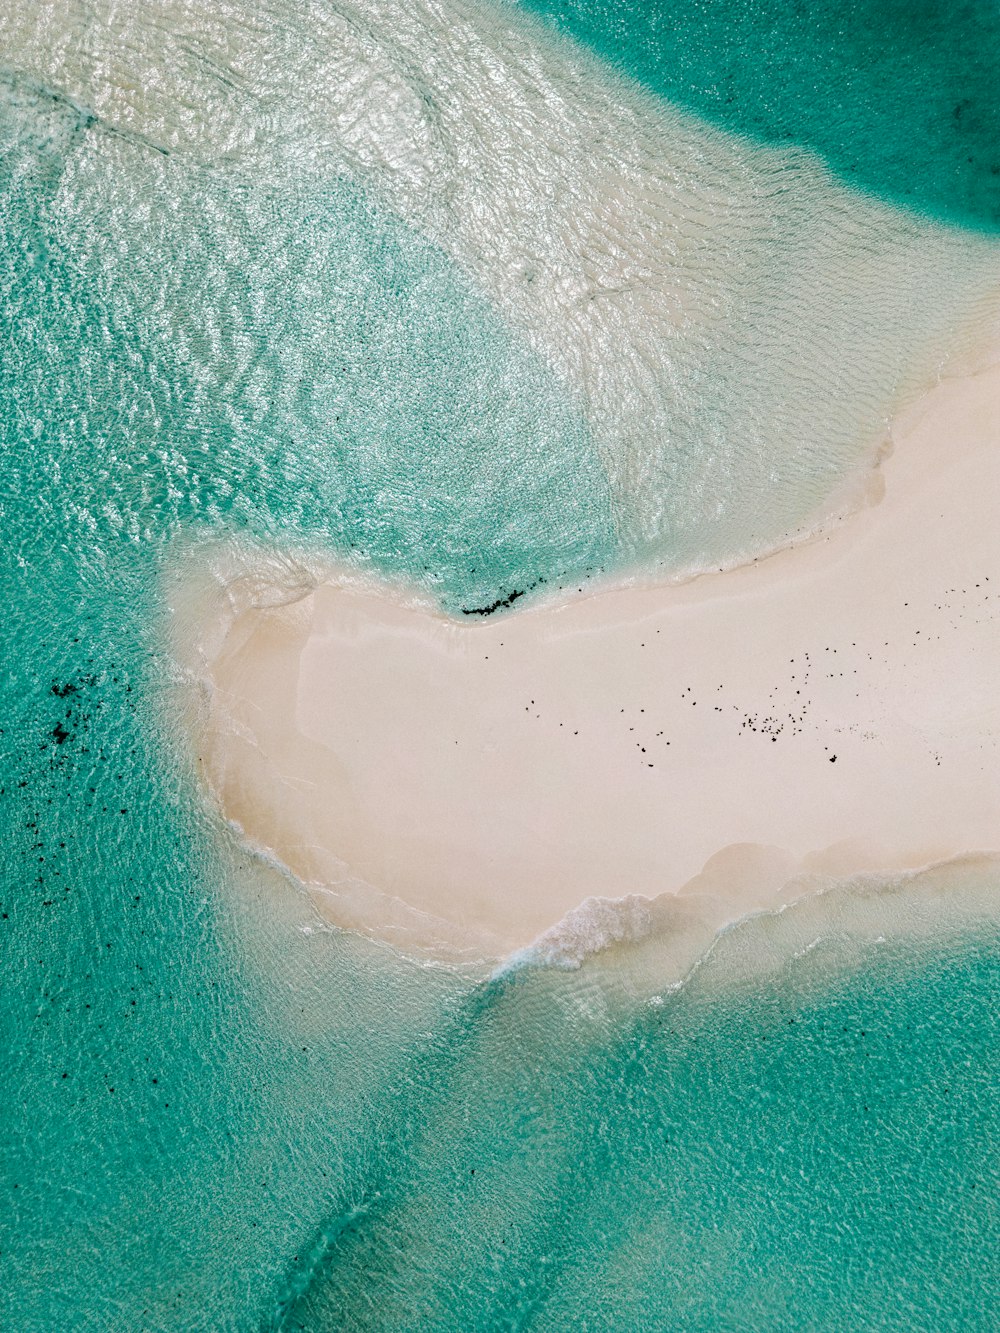 an aerial view of a sandy beach in the ocean